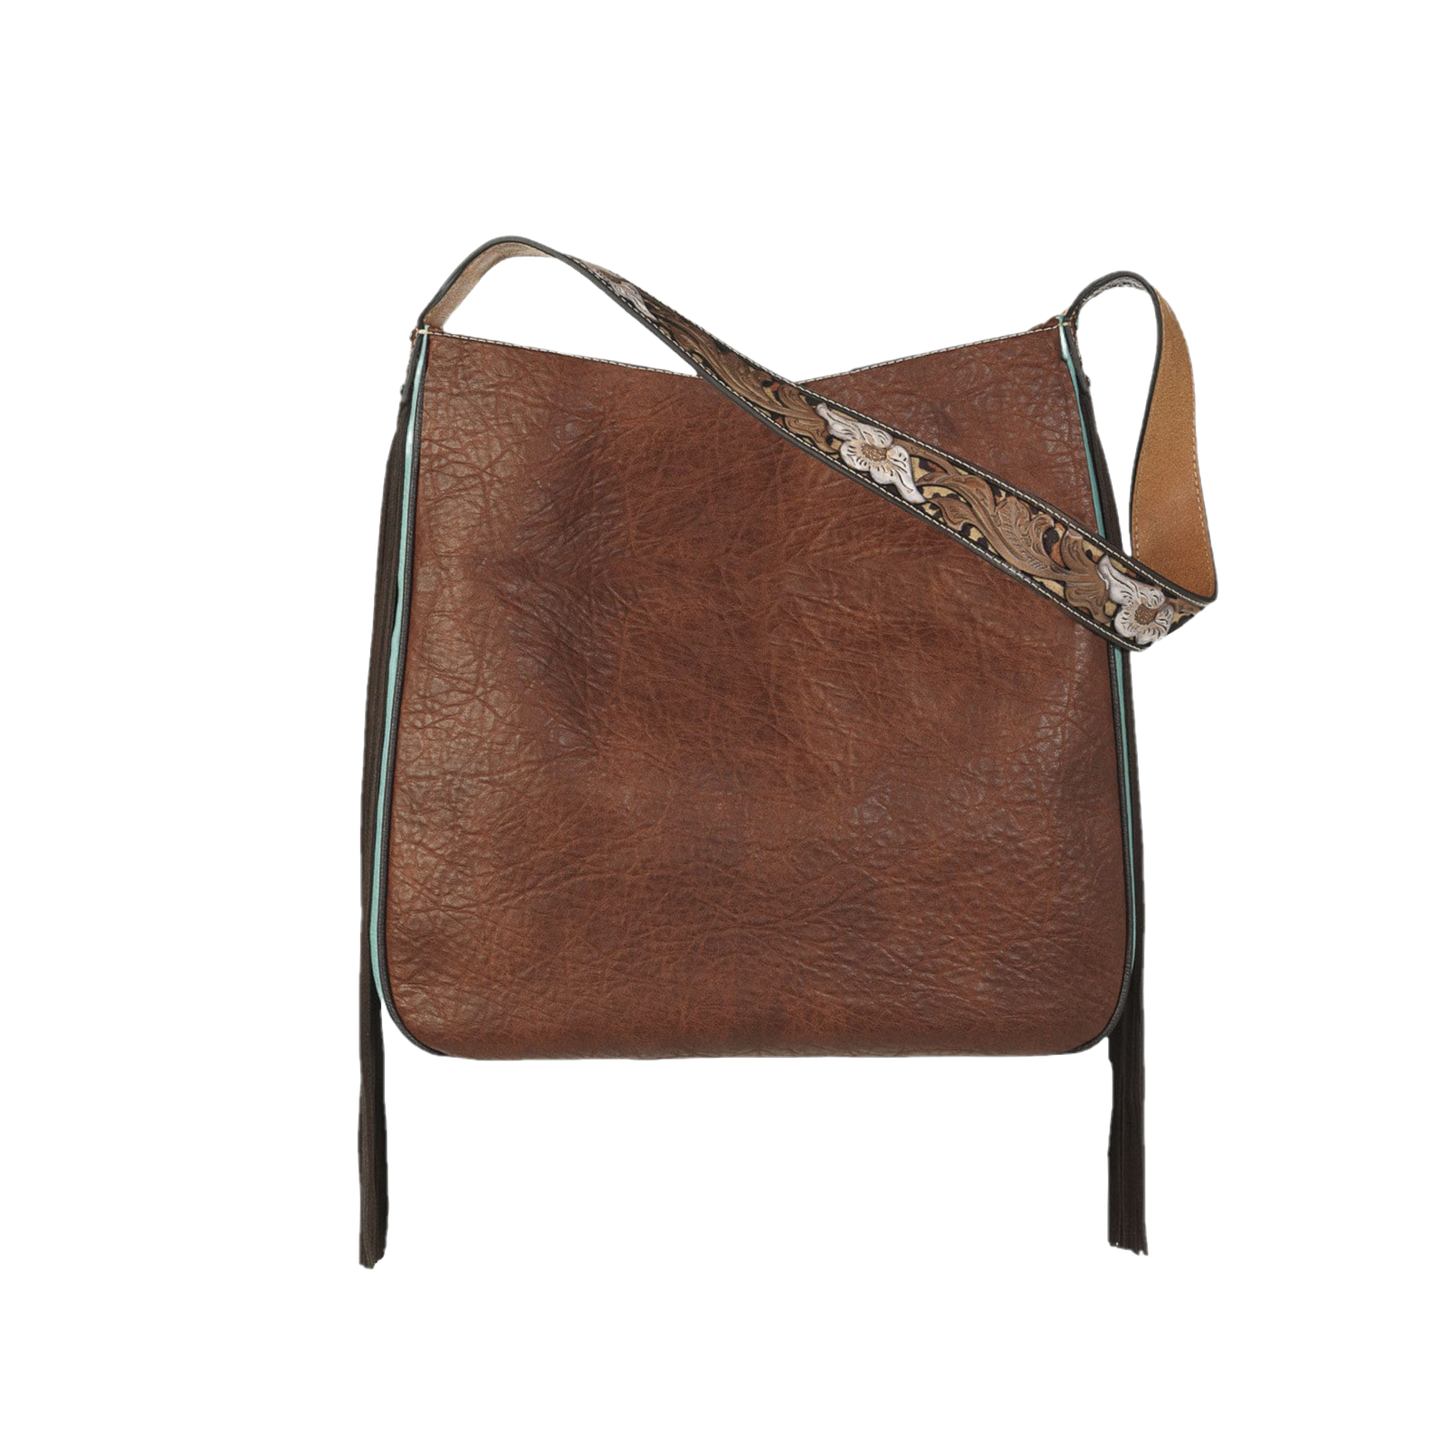 Nocona Ladies Jean Concealed Carry Brown Leather Shoulder Bag N770007802